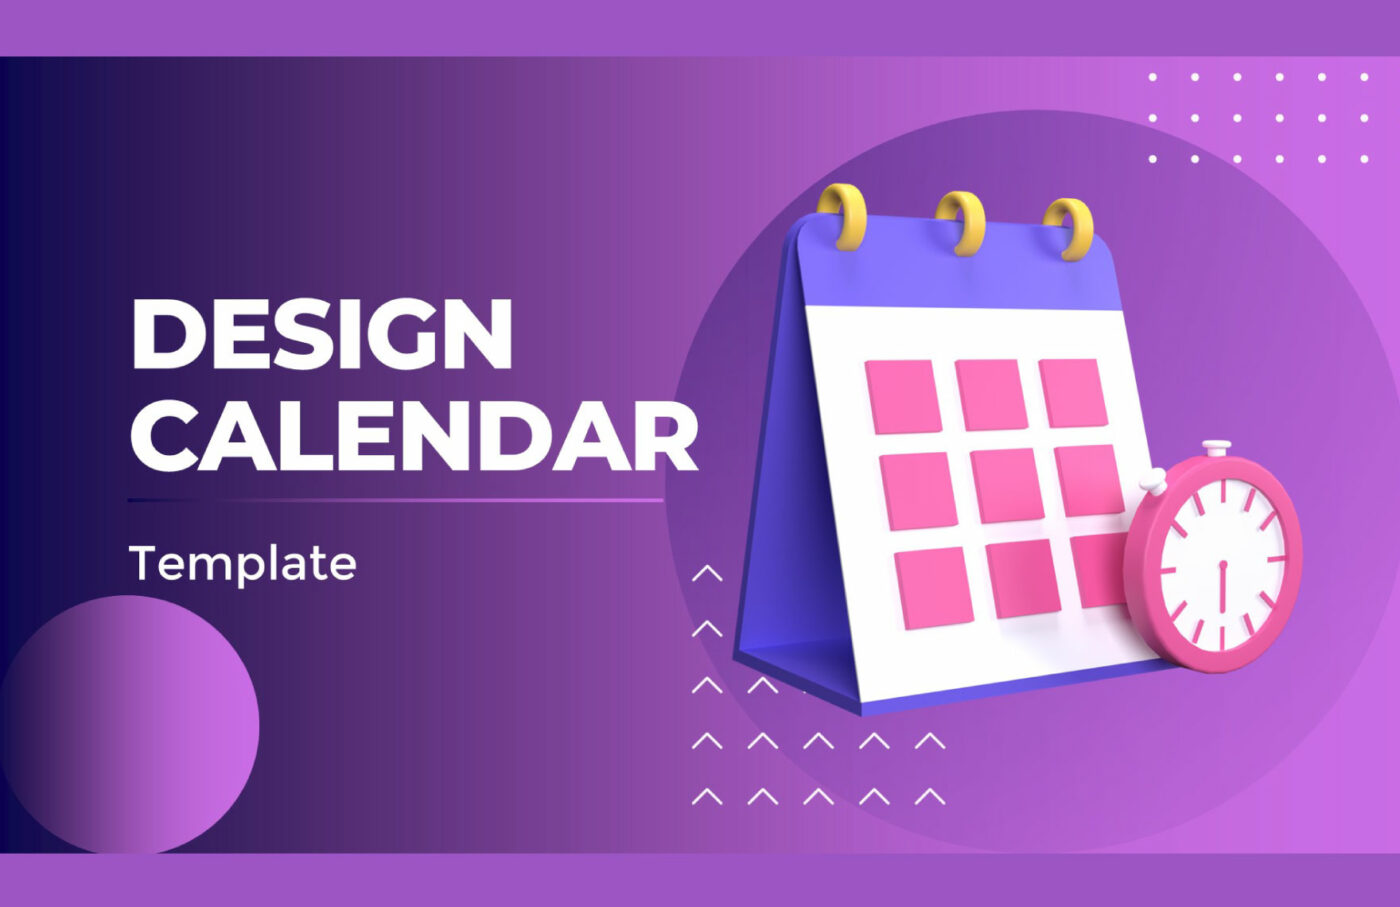 Design Google Calendar Template by Template.net